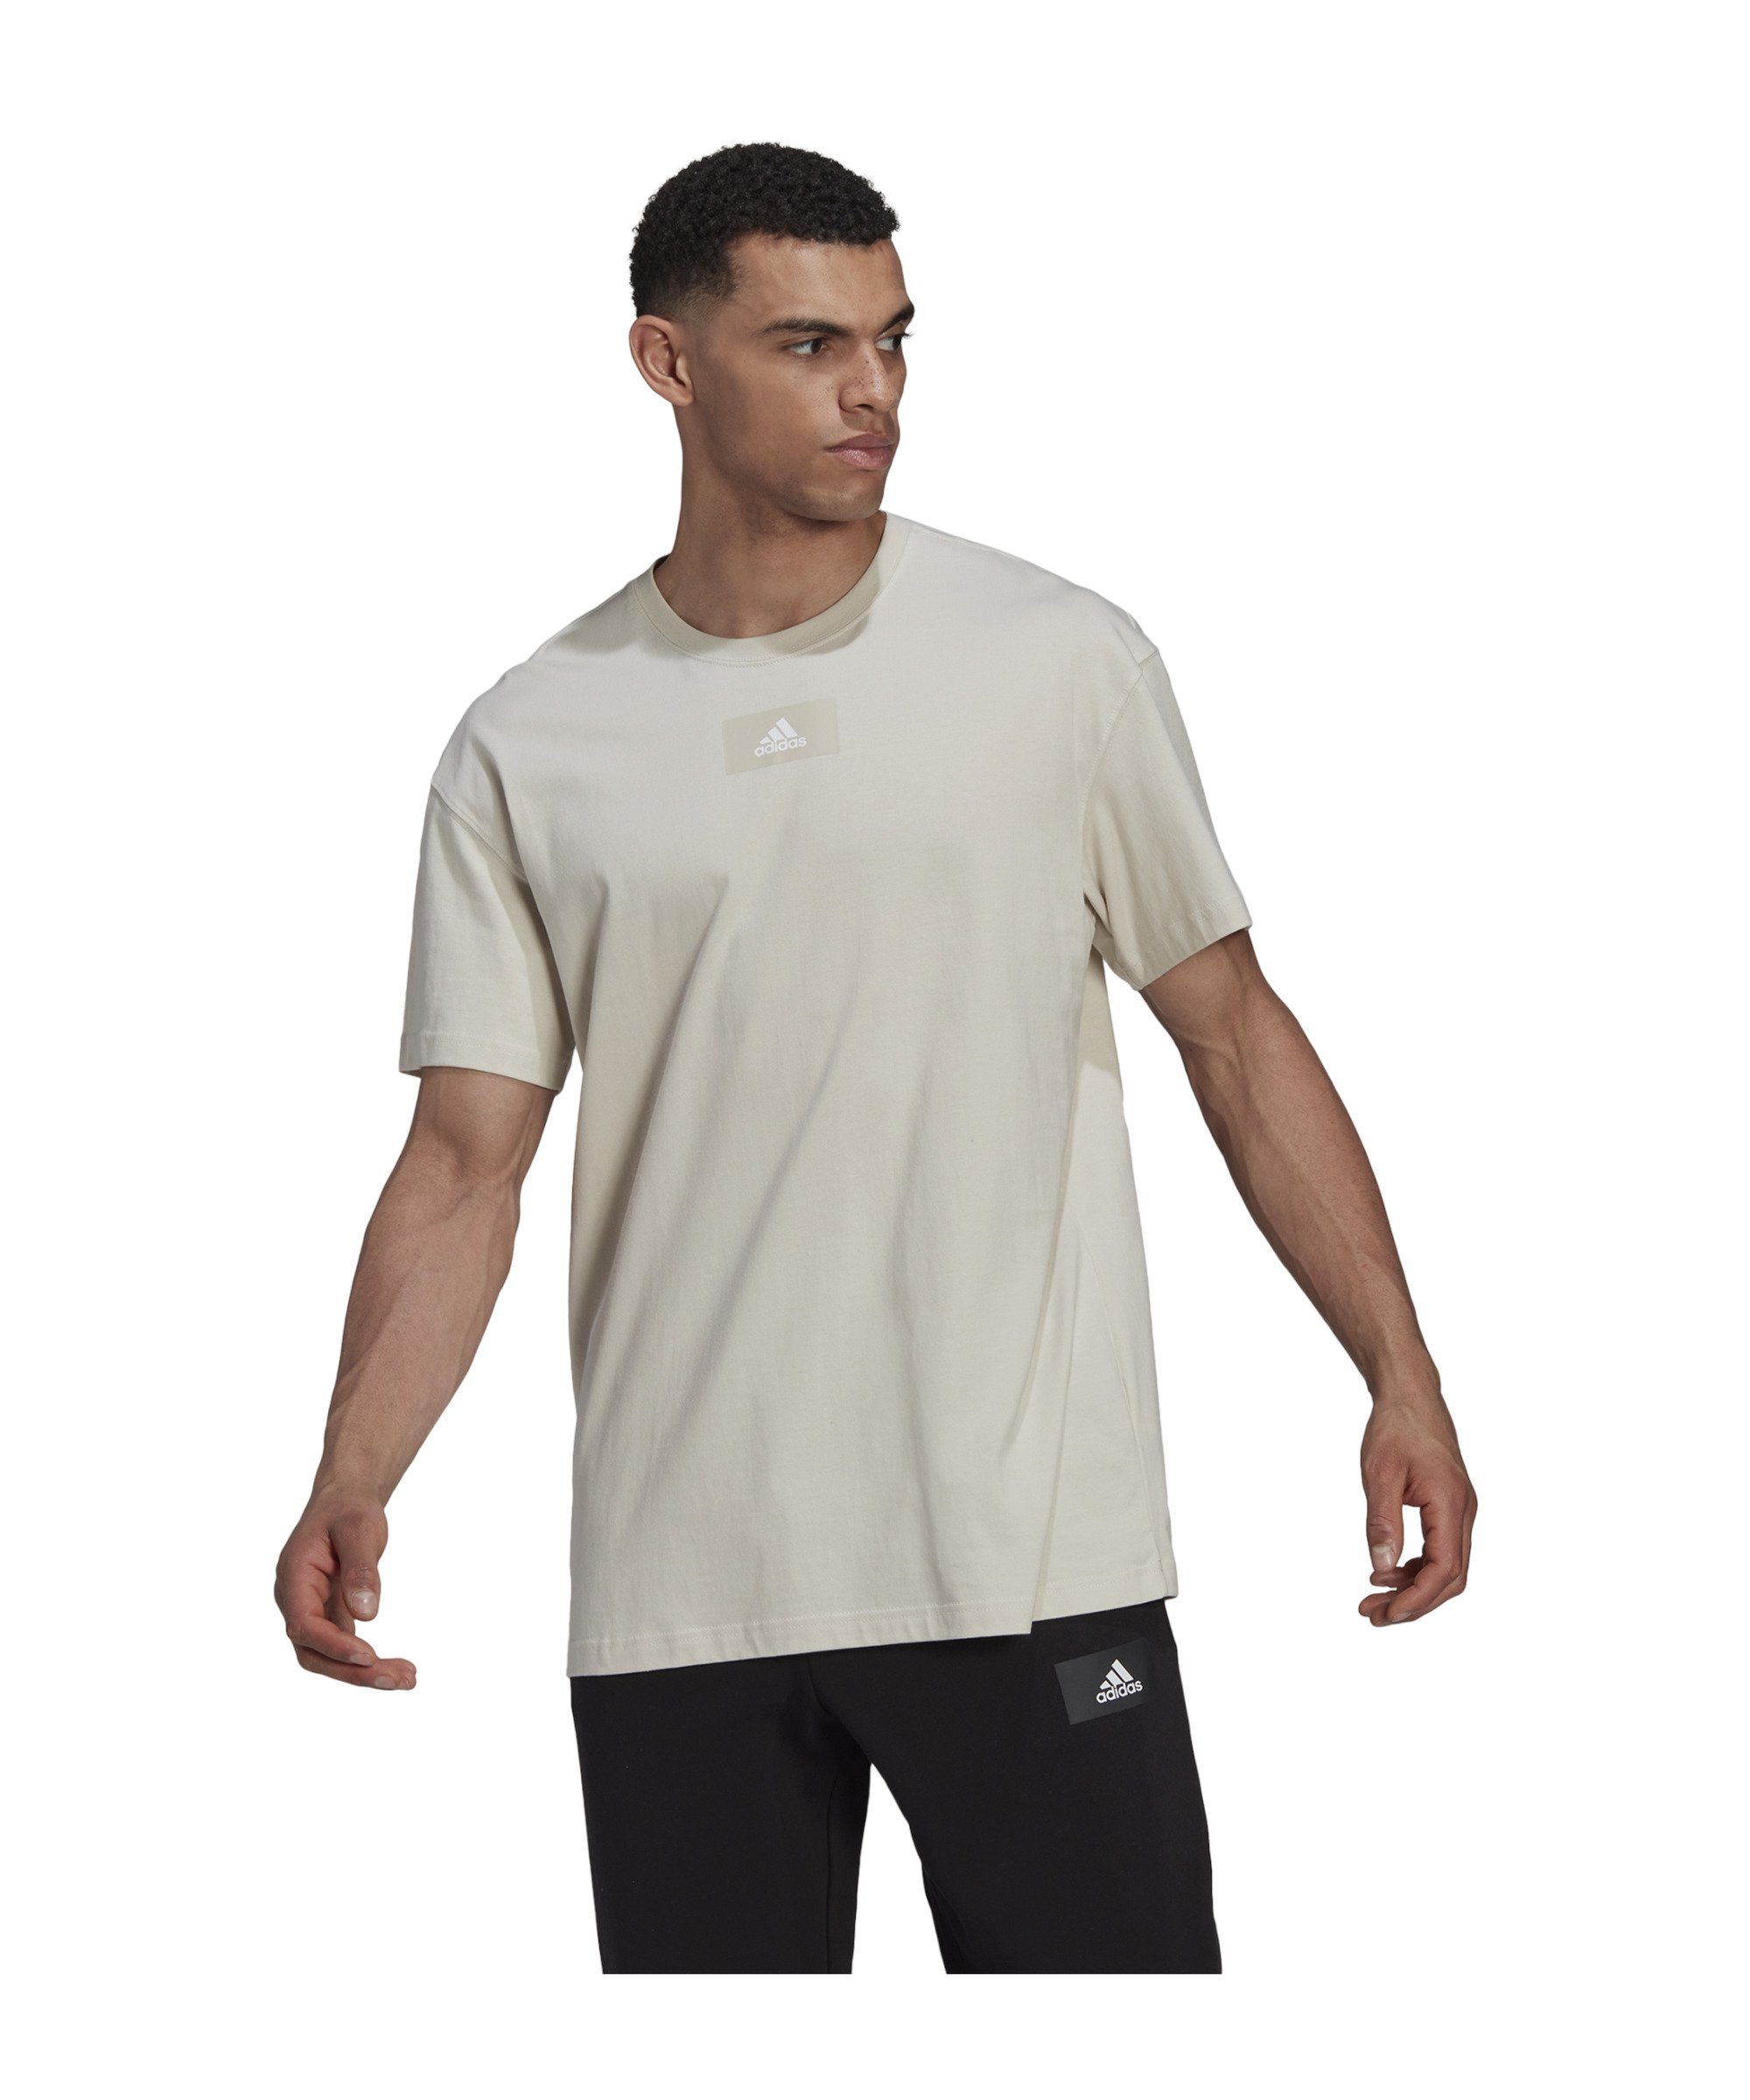 T-Shirt grau FV default T-Shirt Performance adidas